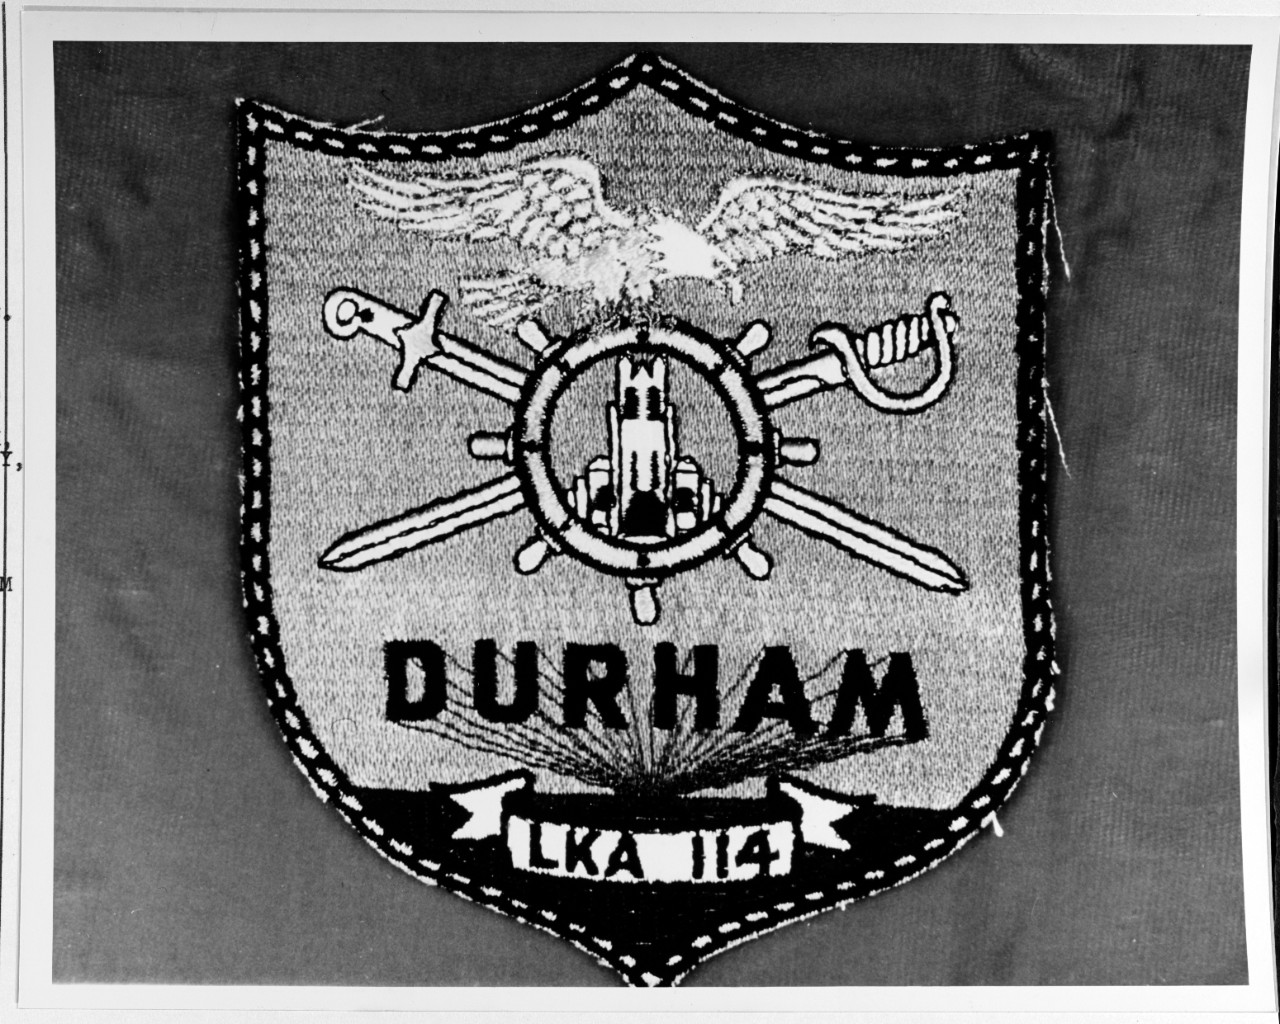 Insignia: USS DURHAM (LKA-114)